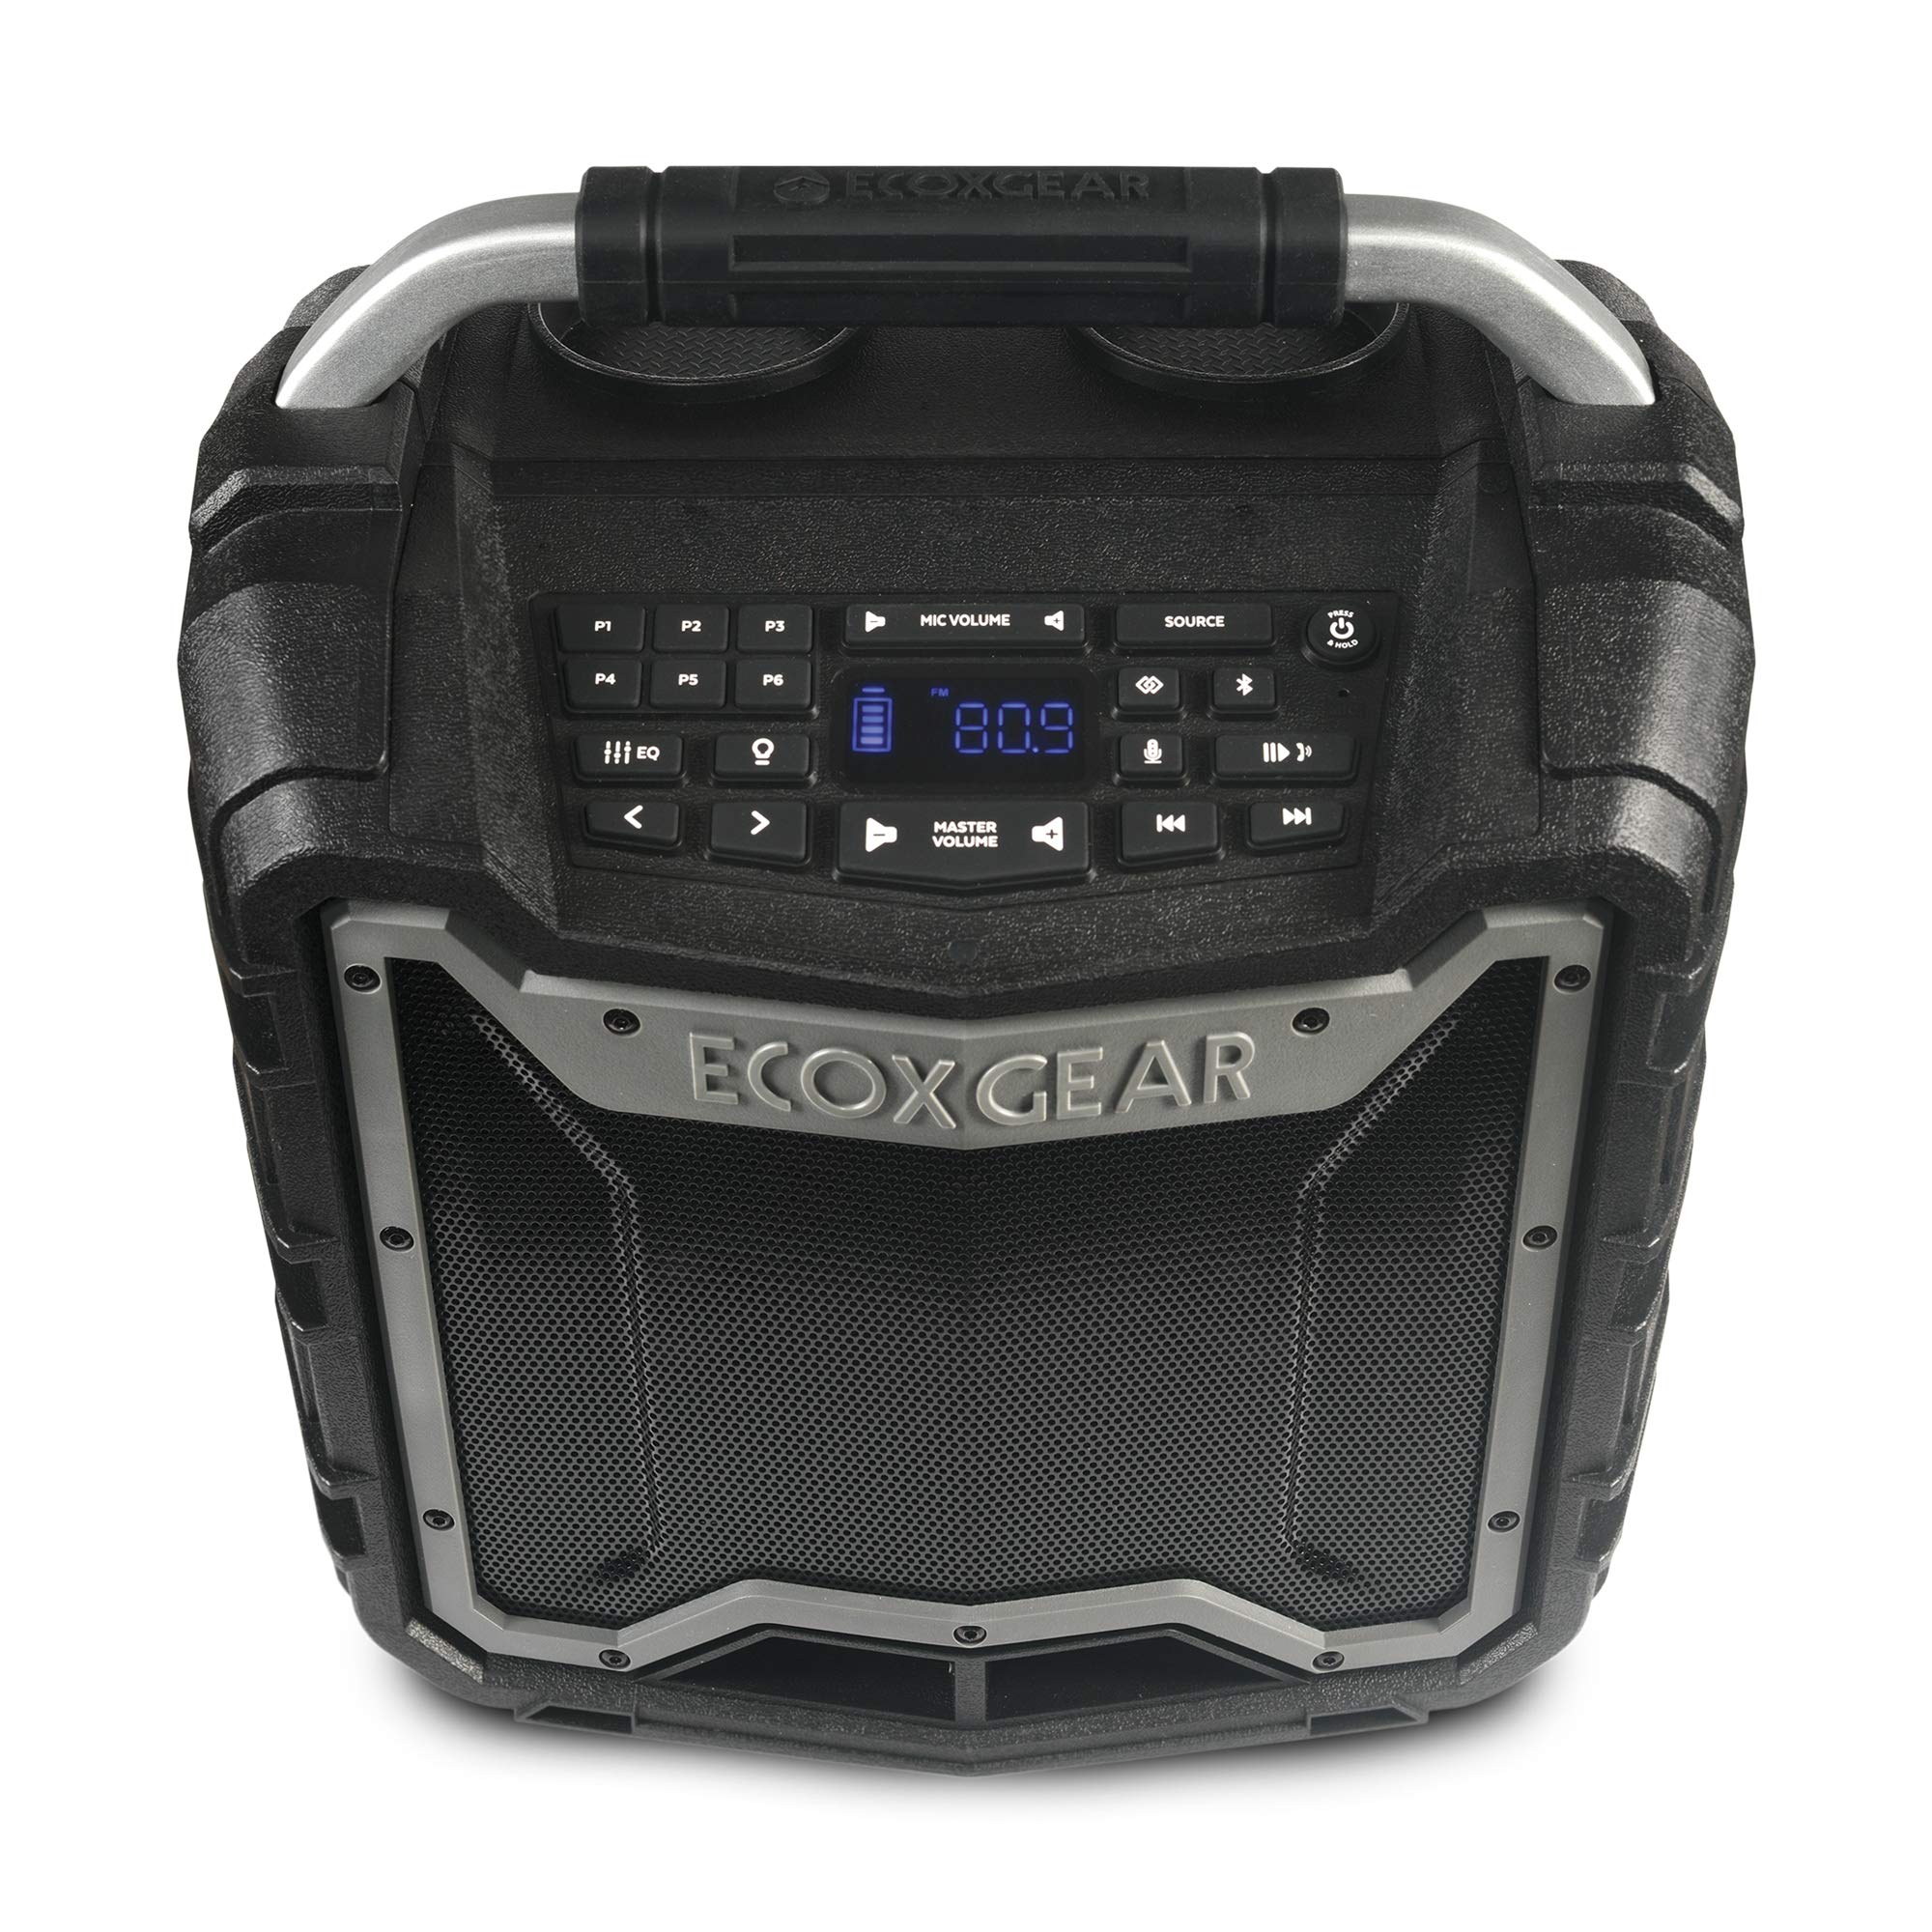 ECOXGEAR EcoTrek GDI-EXTRK210 Haut-parleur intelligent stéréo portable sans fil Bluetooth 100 W et système de sonorisation robuste et étanche (gris)